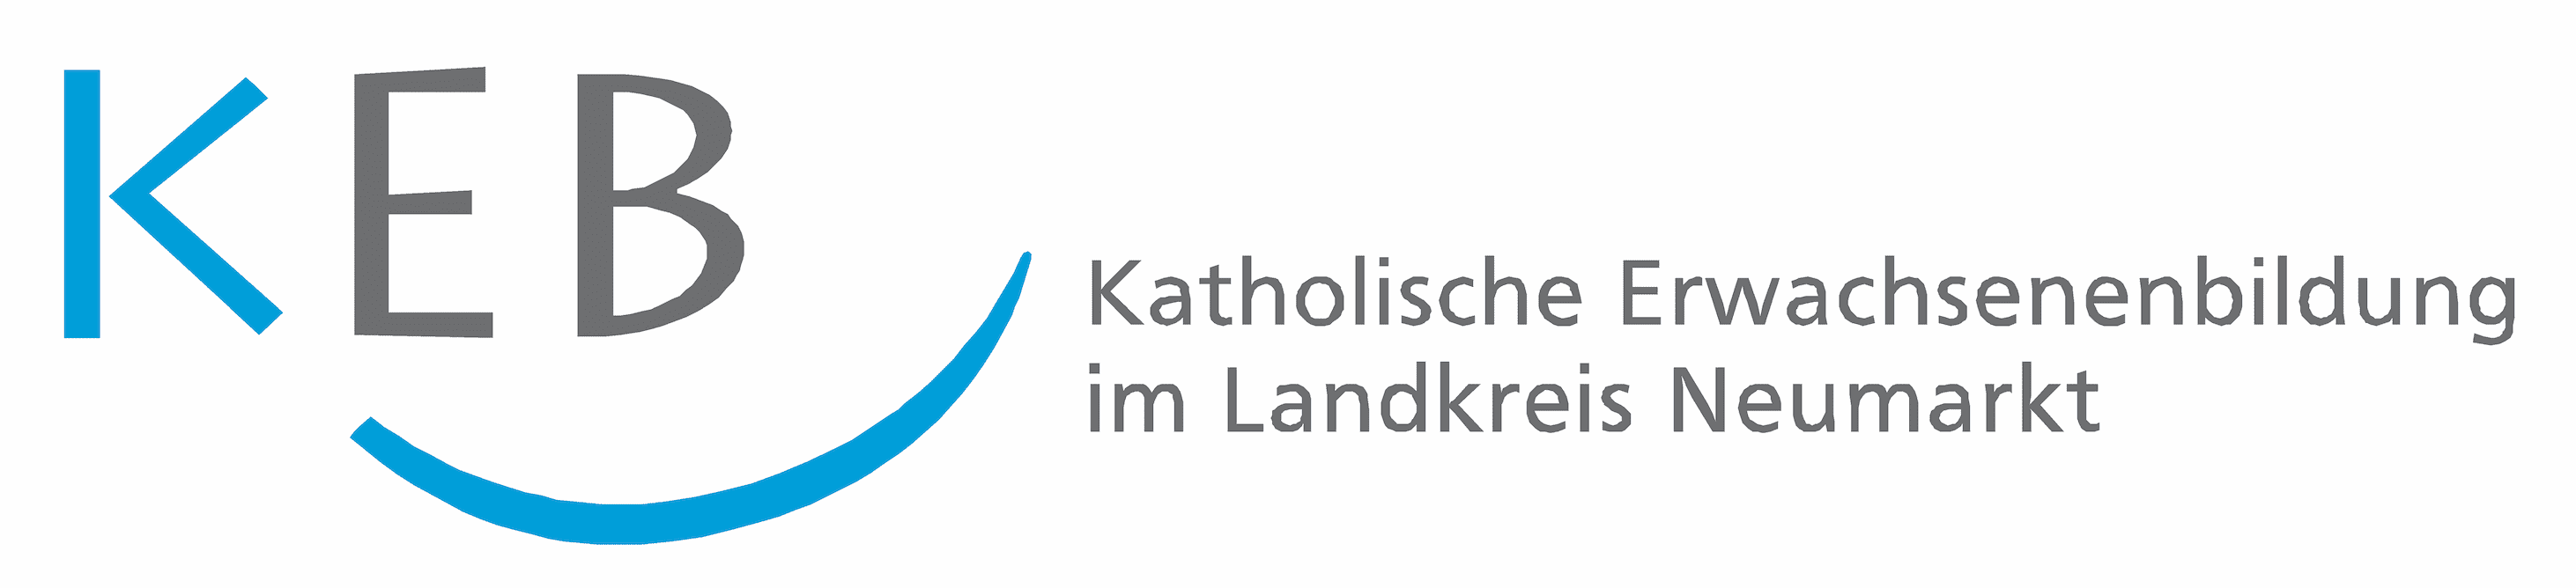 Das Logo der Katholischen Erwachsenenbildung im Landkreis Neumarkt